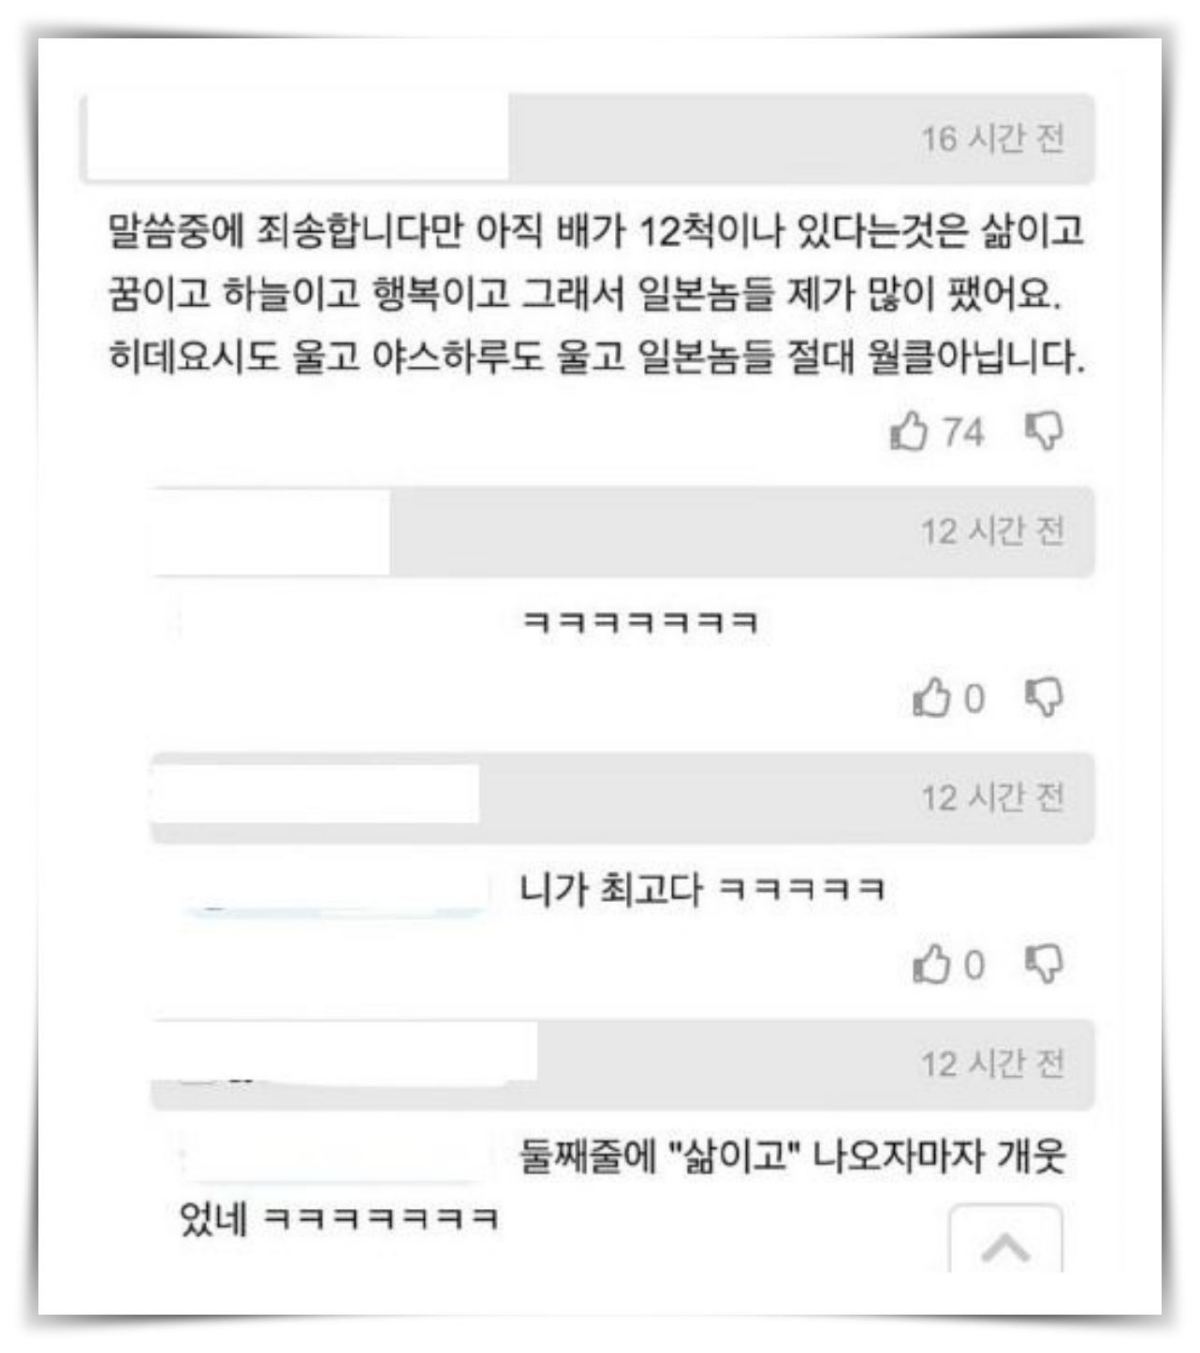 복원된 이순신 초상화… 네티즌들이 화들짝 놀라고 있다 (+생각지도 못한 이유)